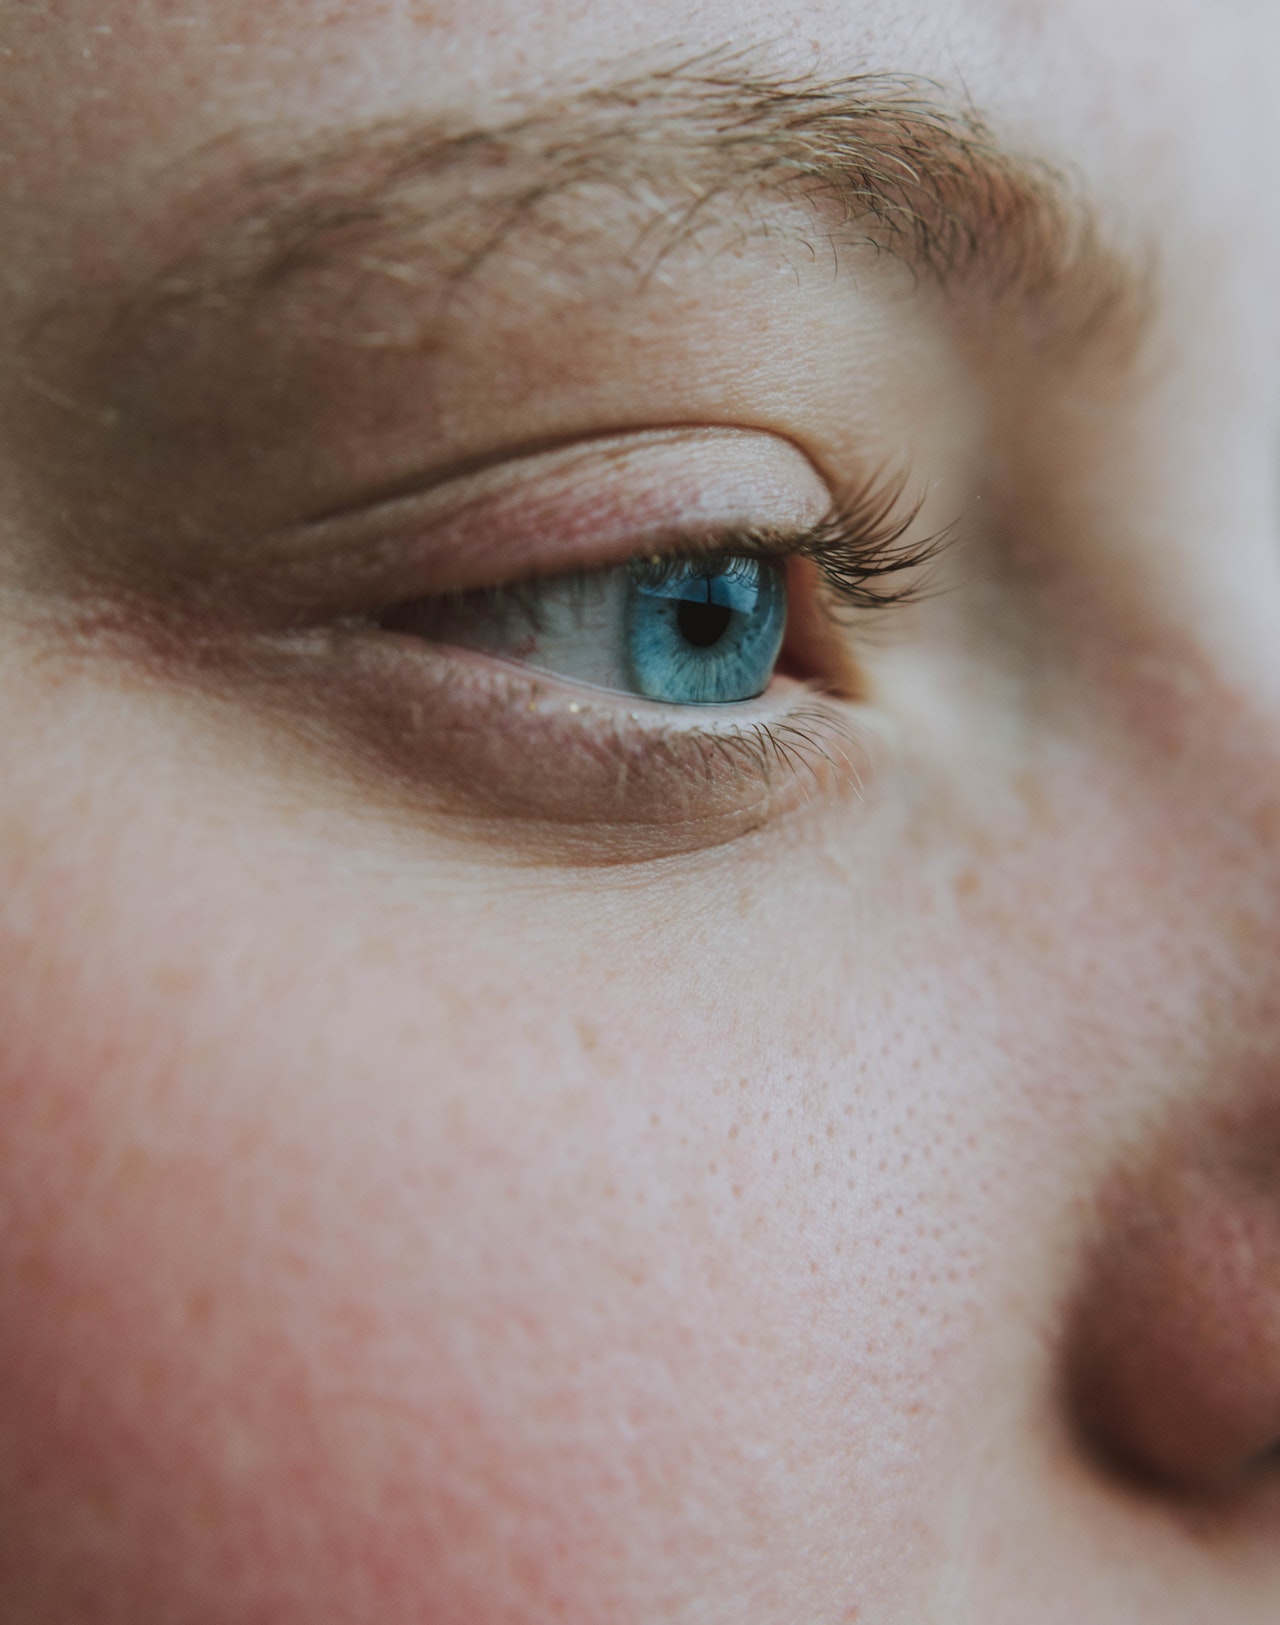 Влияет ли плохое зрение на появление морщин?